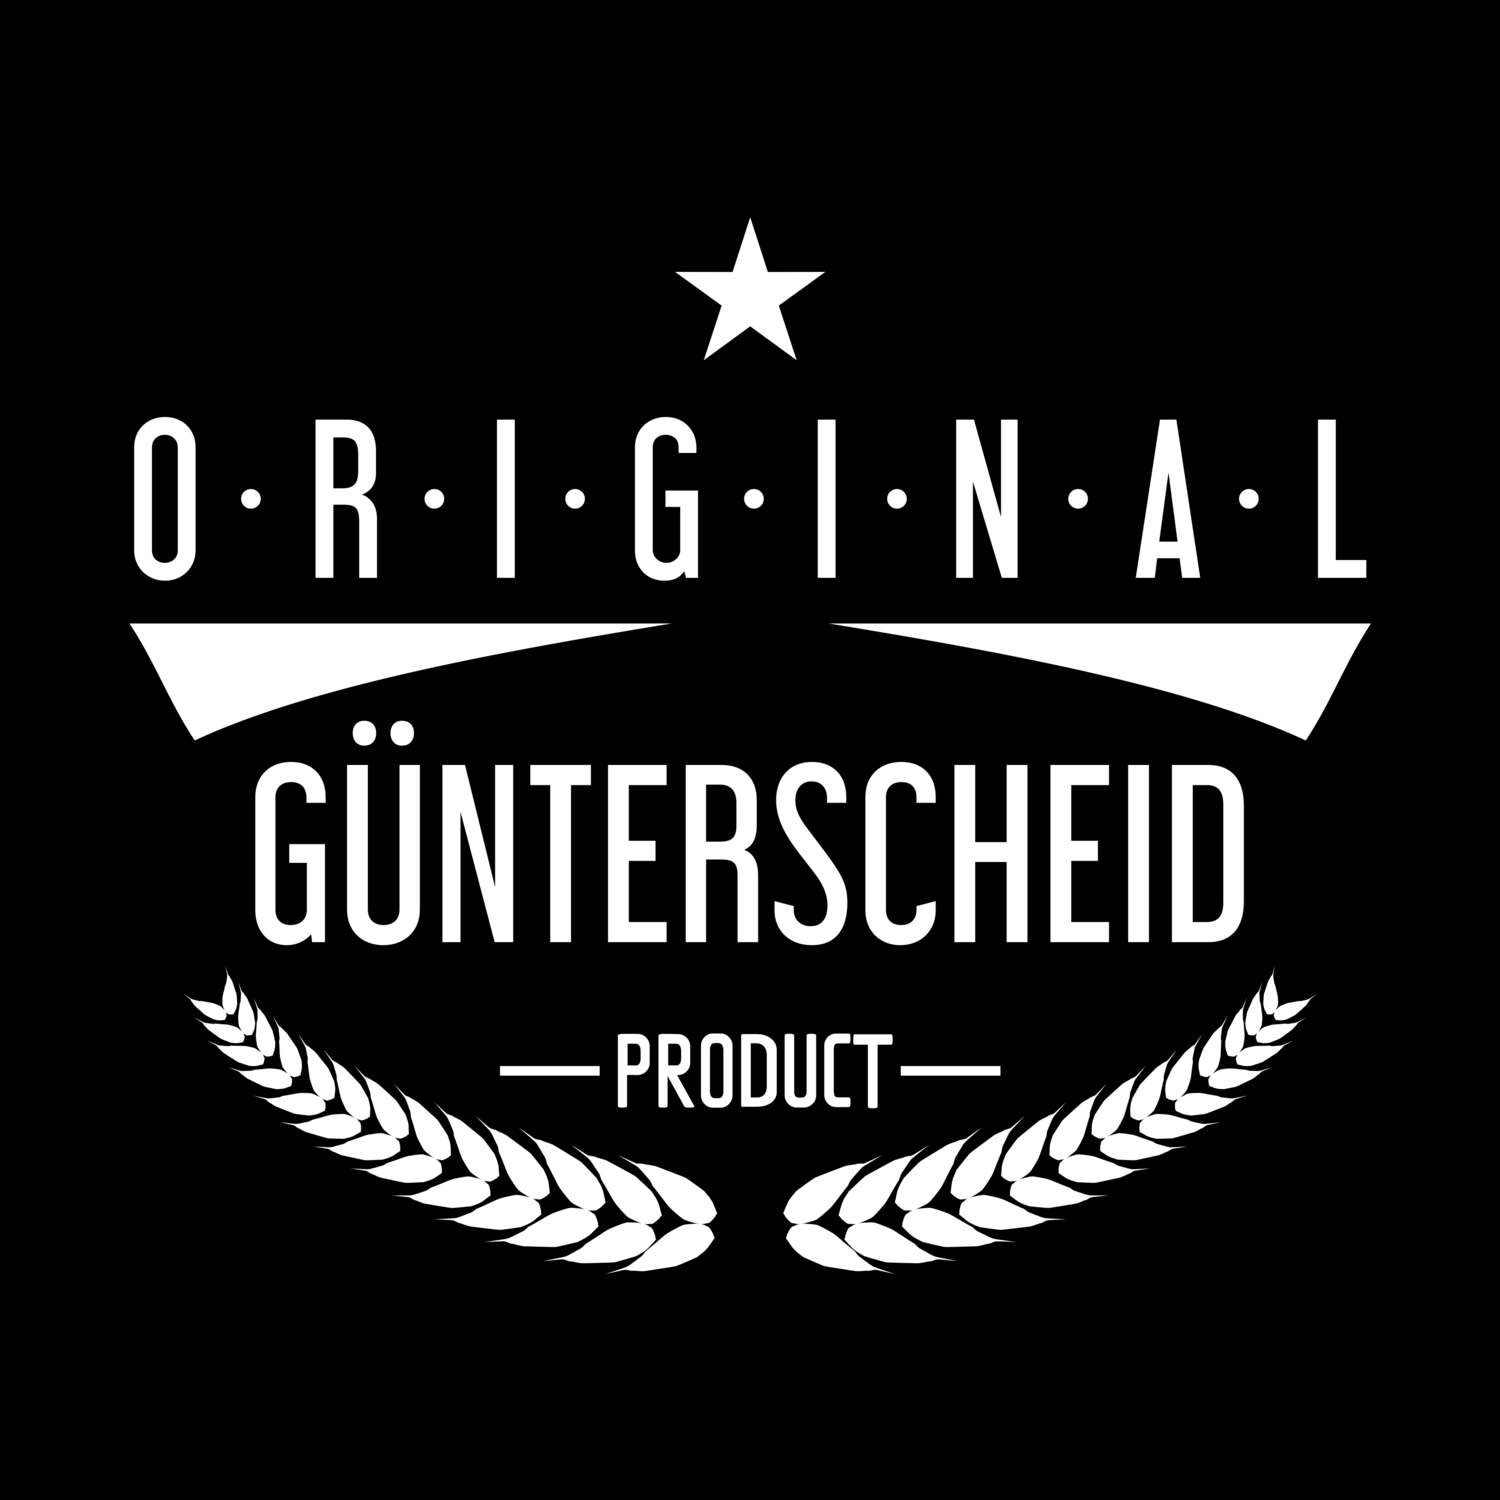 Günterscheid T-Shirt »Original Product«